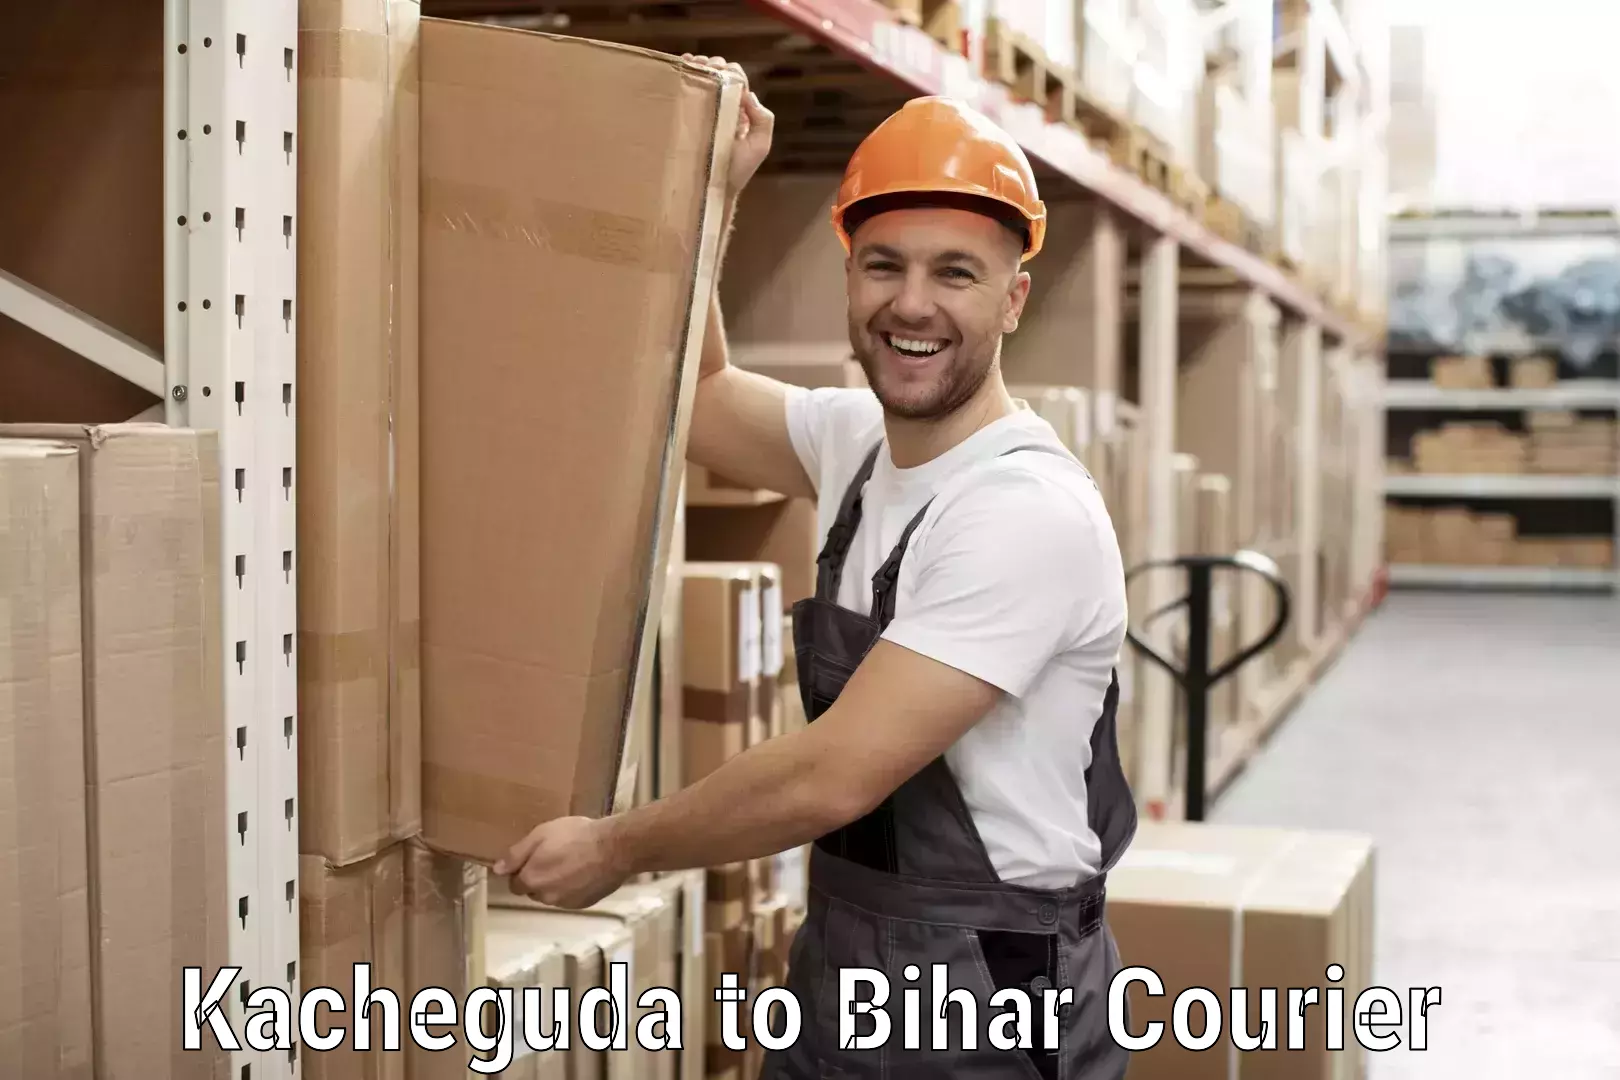 Discounted shipping Kacheguda to Bihar